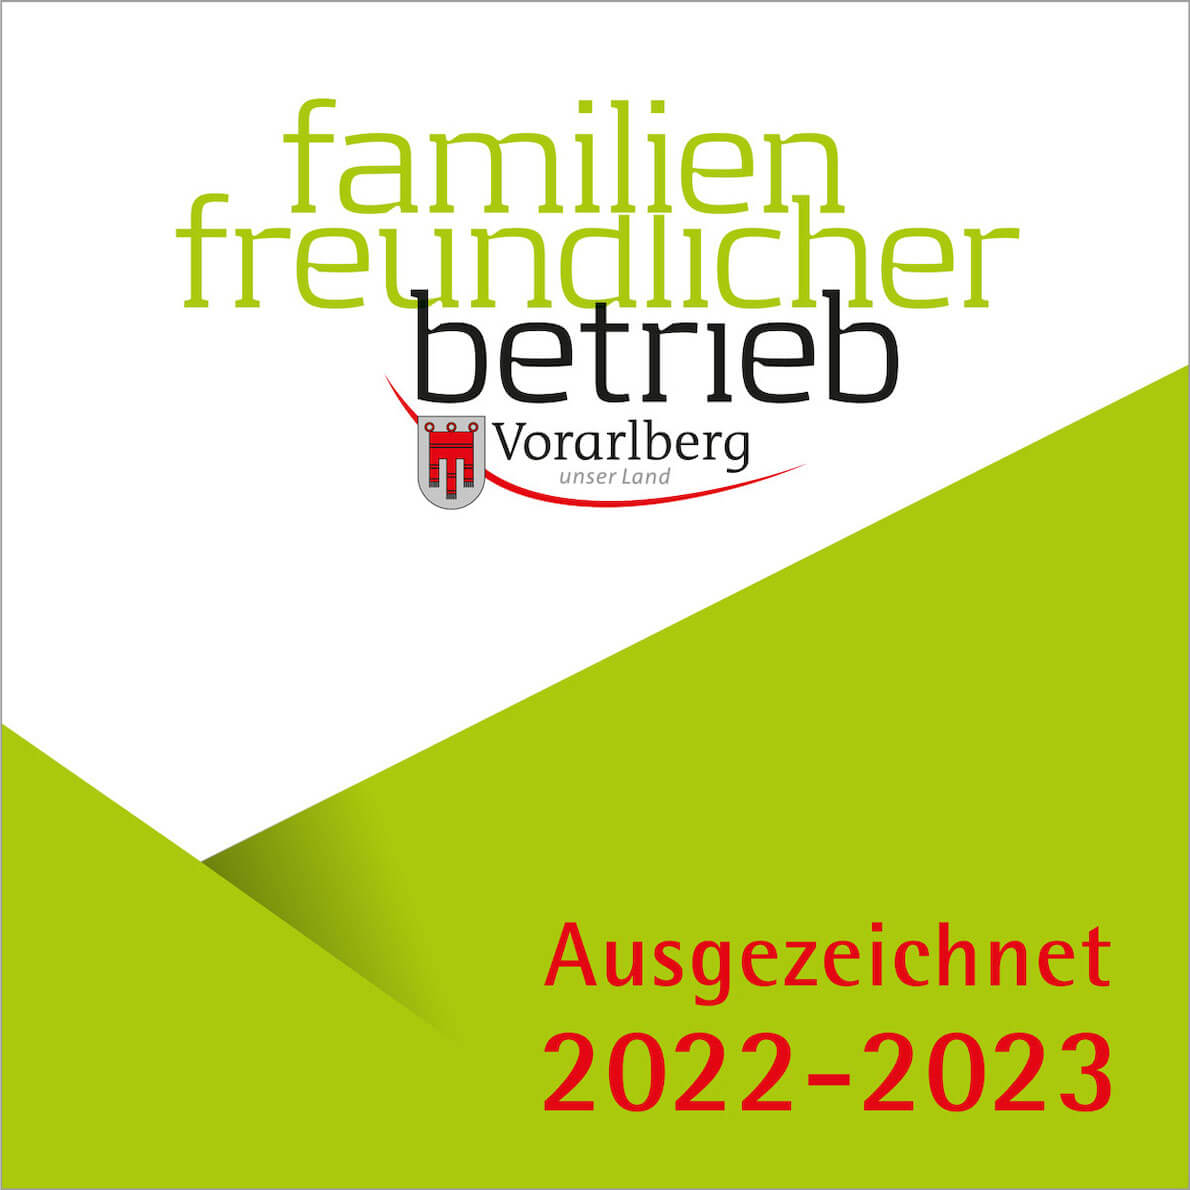 Familienfreundlicher Betrieb Ausgezeichnet 2022 2023